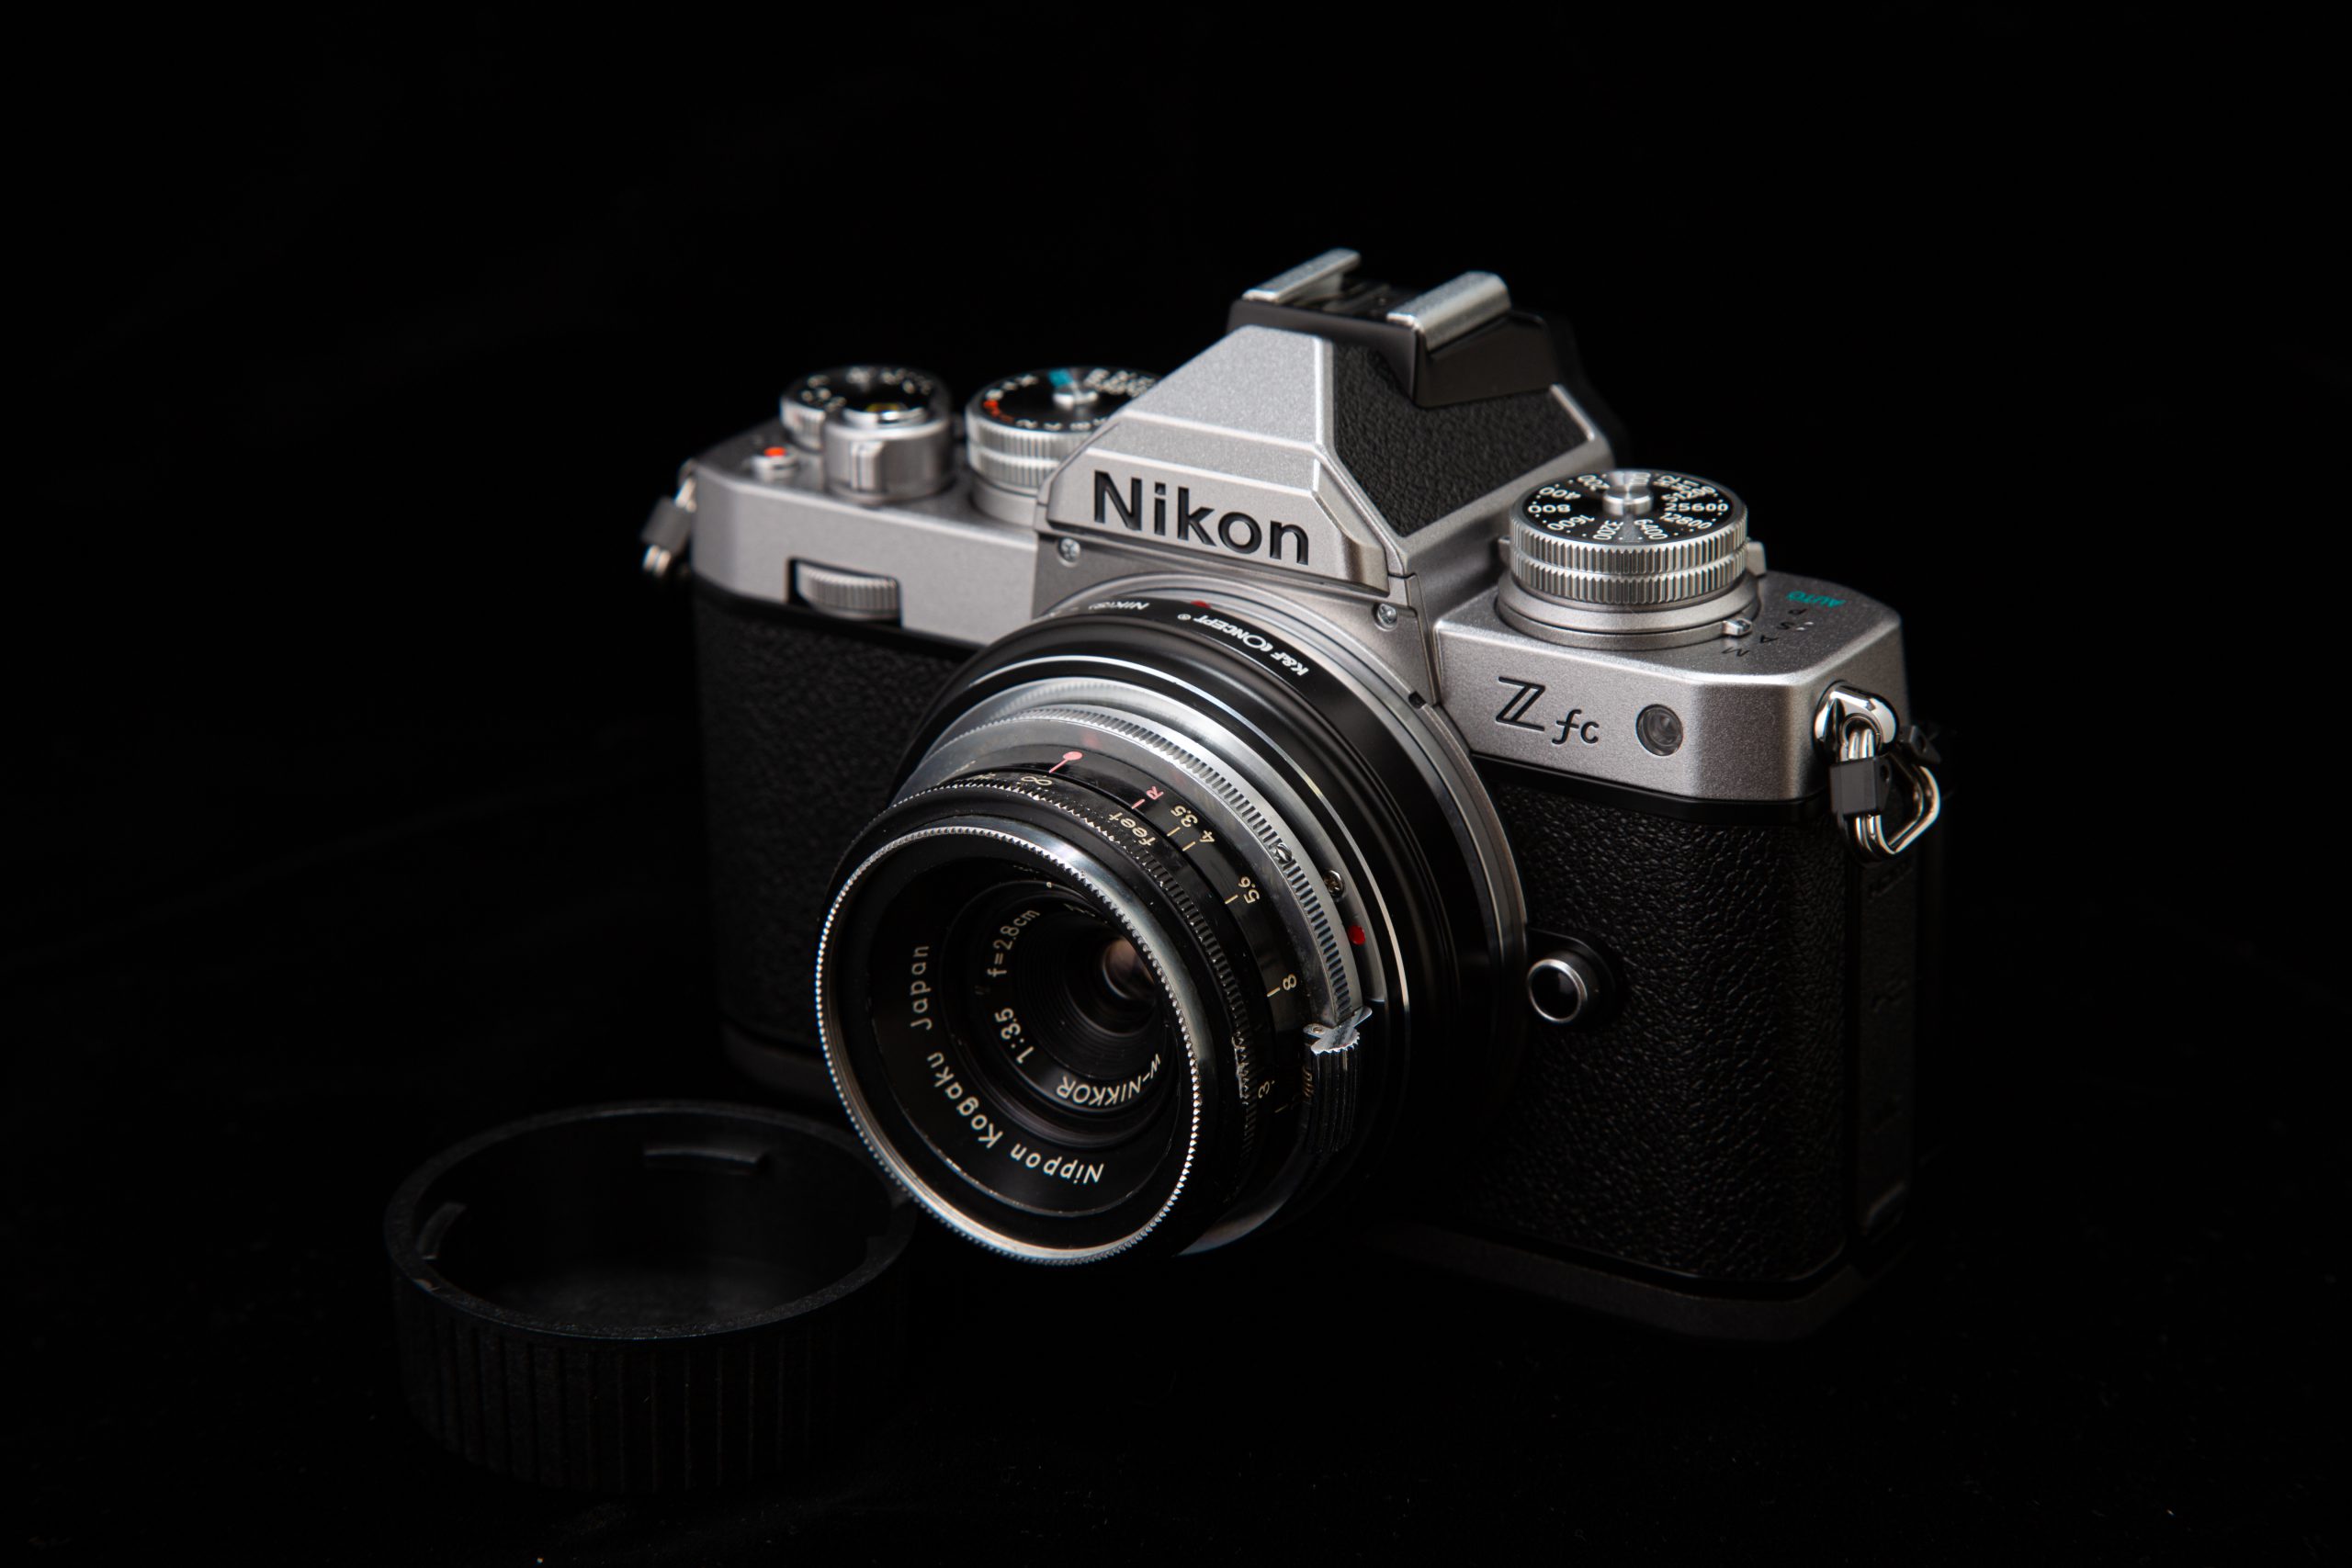 Nikon Z fc+W-NIKKOR (S) 28mm F3.5 黒鏡筒(2)